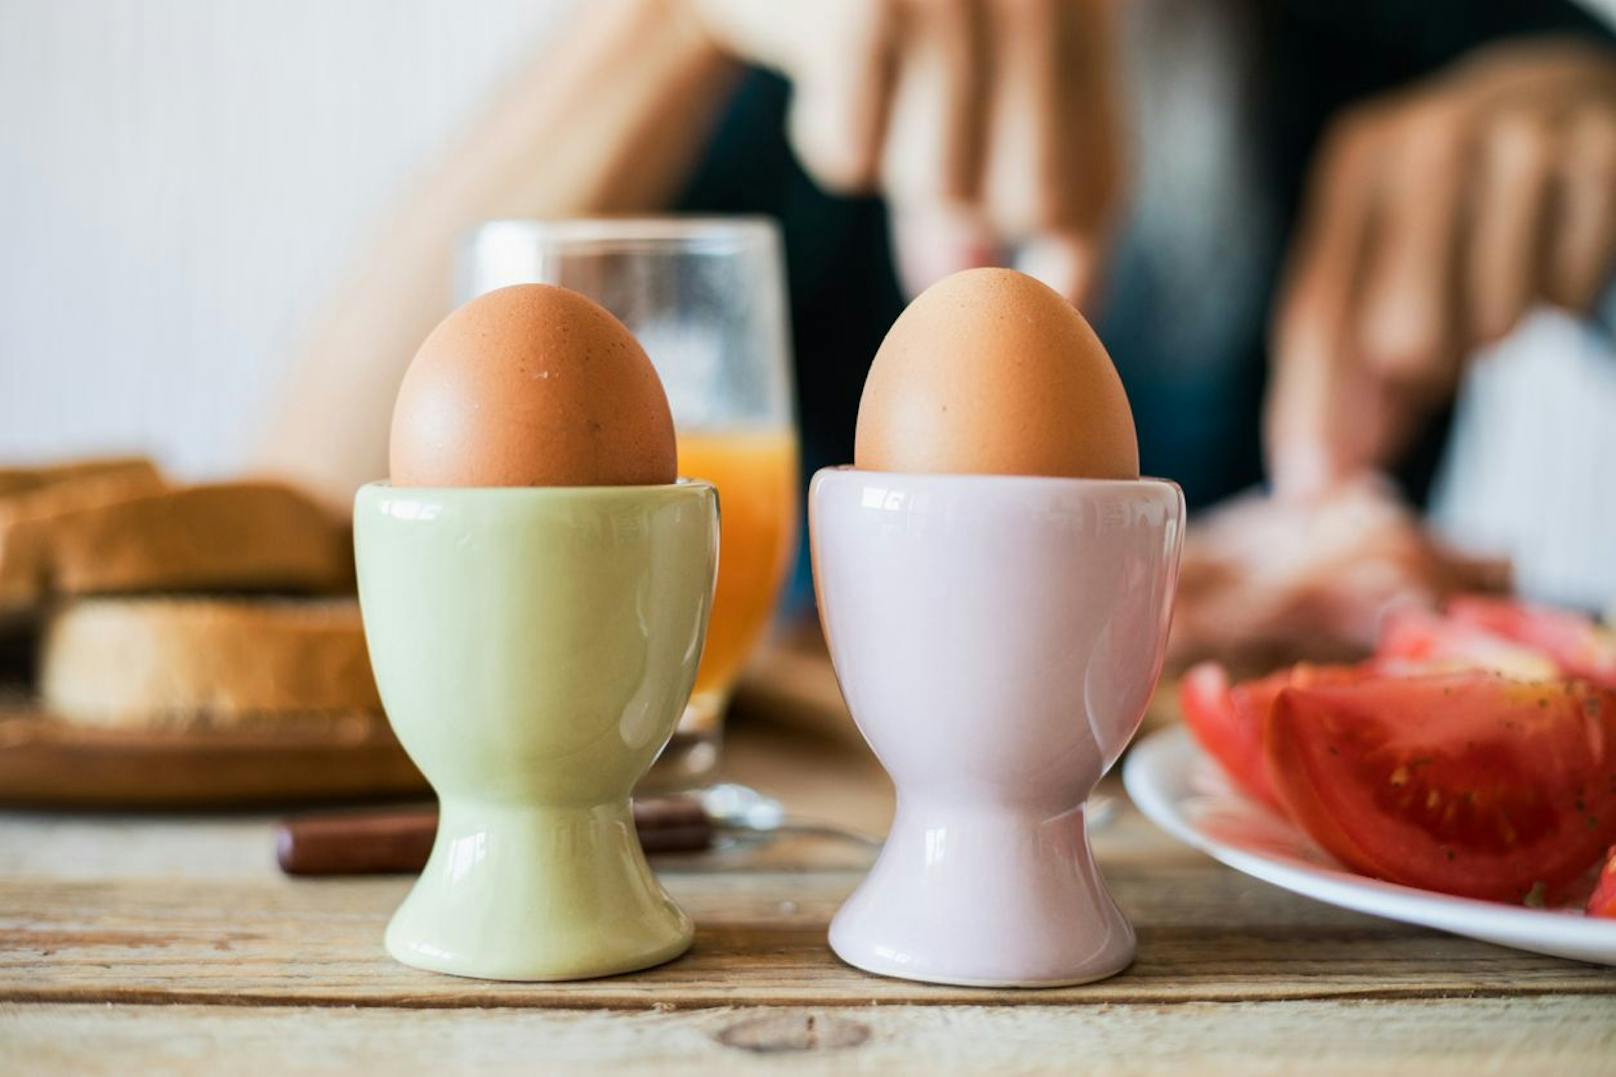 Wenn du frisch am Morgen ein Ei verdrückst kannst du dir sicher sein, dass du mit reichlich Energie in den Tag starten kannst. Das Frühstücksessen schmeckt nicht nur gut, es ist auch ein zuverlässiger Vitamin-D-Lieferant. 